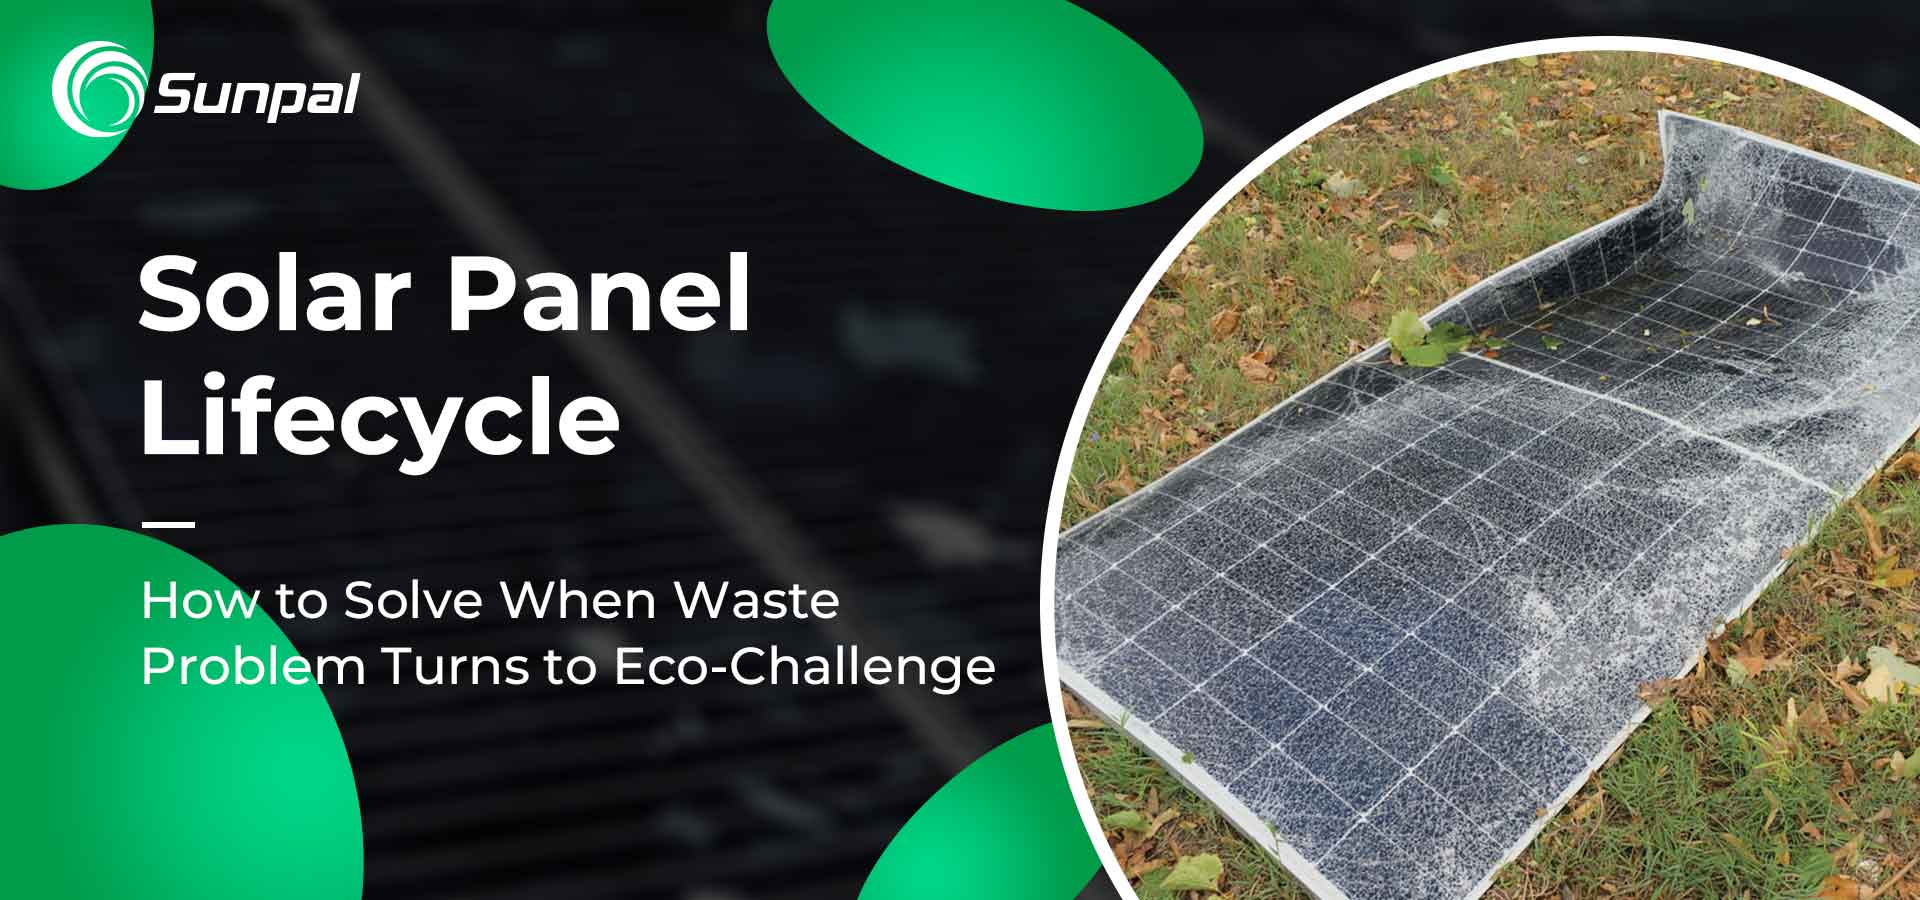 Vòng đời của tấm pin mặt trời: Vấn đề rác thải trở thành thách thức sinh thái